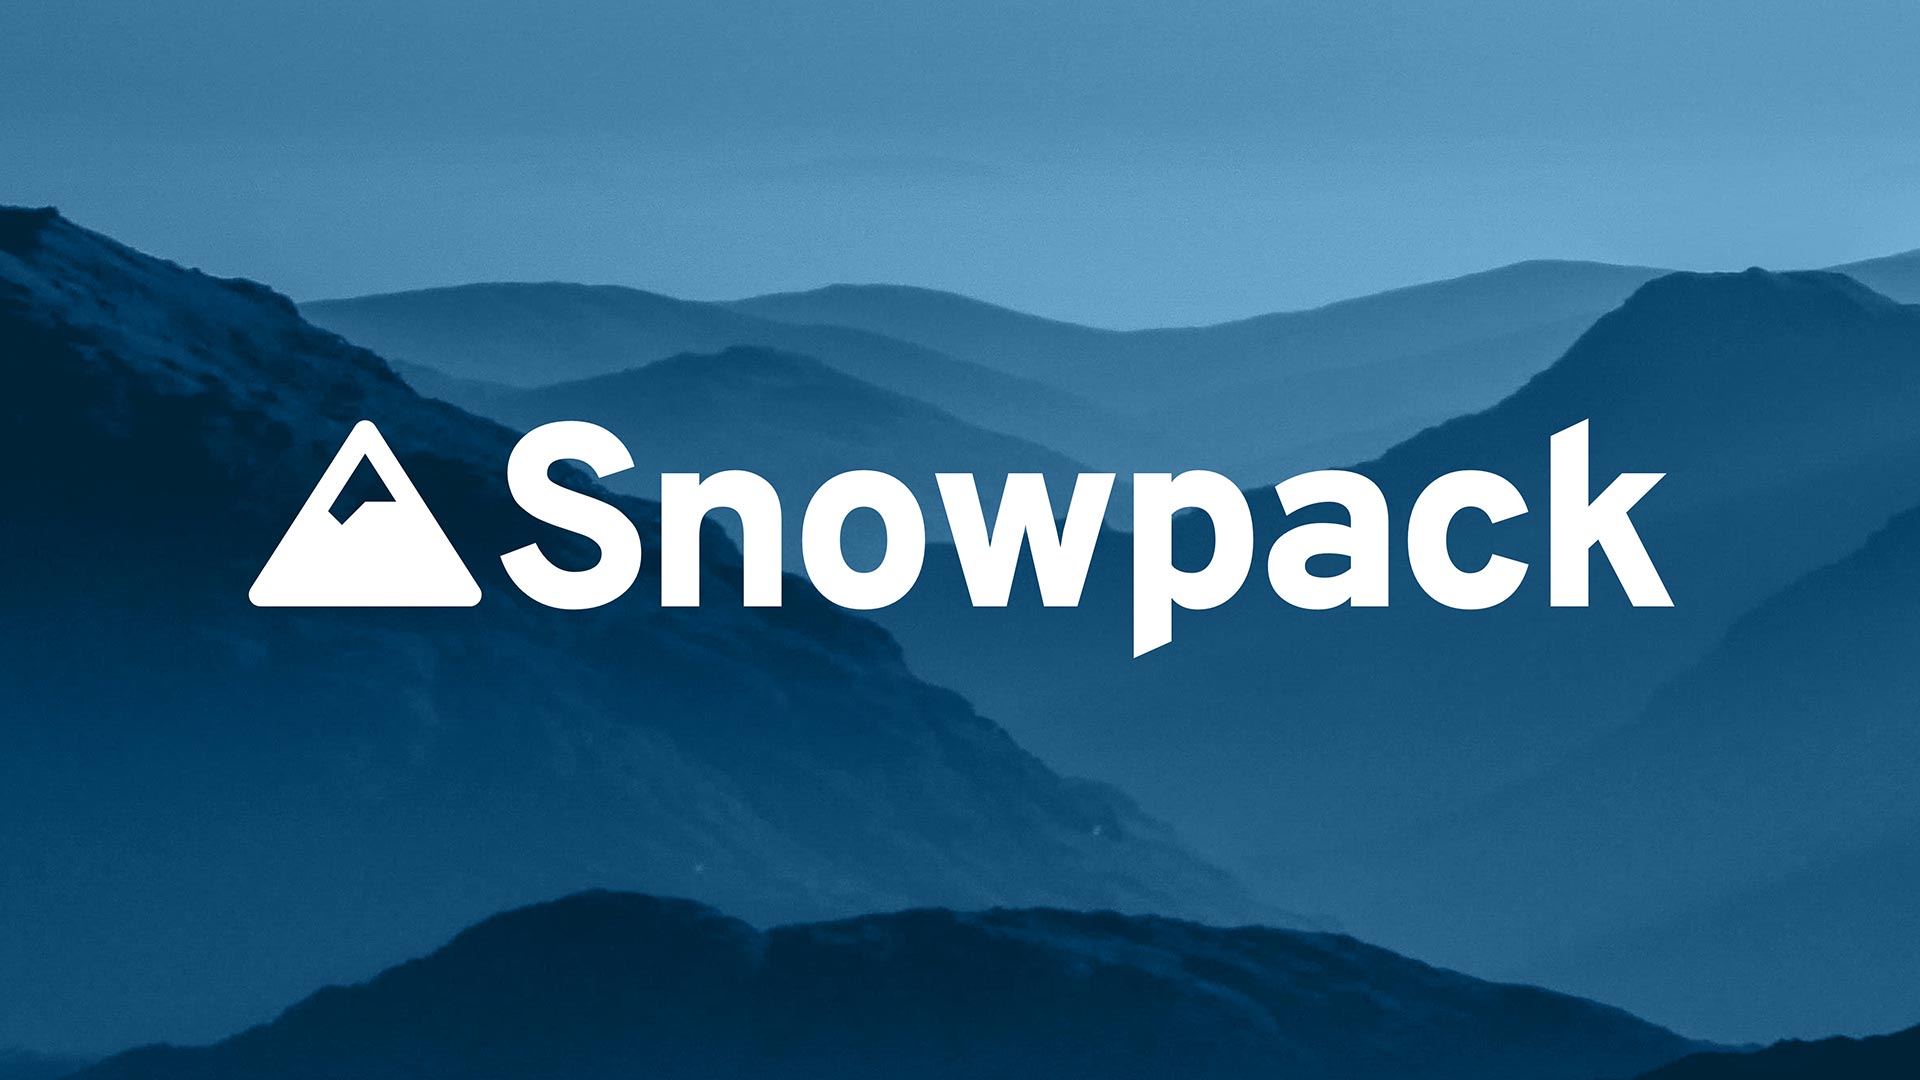 Snowpack, 더 빠른 웹개발을 위한 빌드 시스템